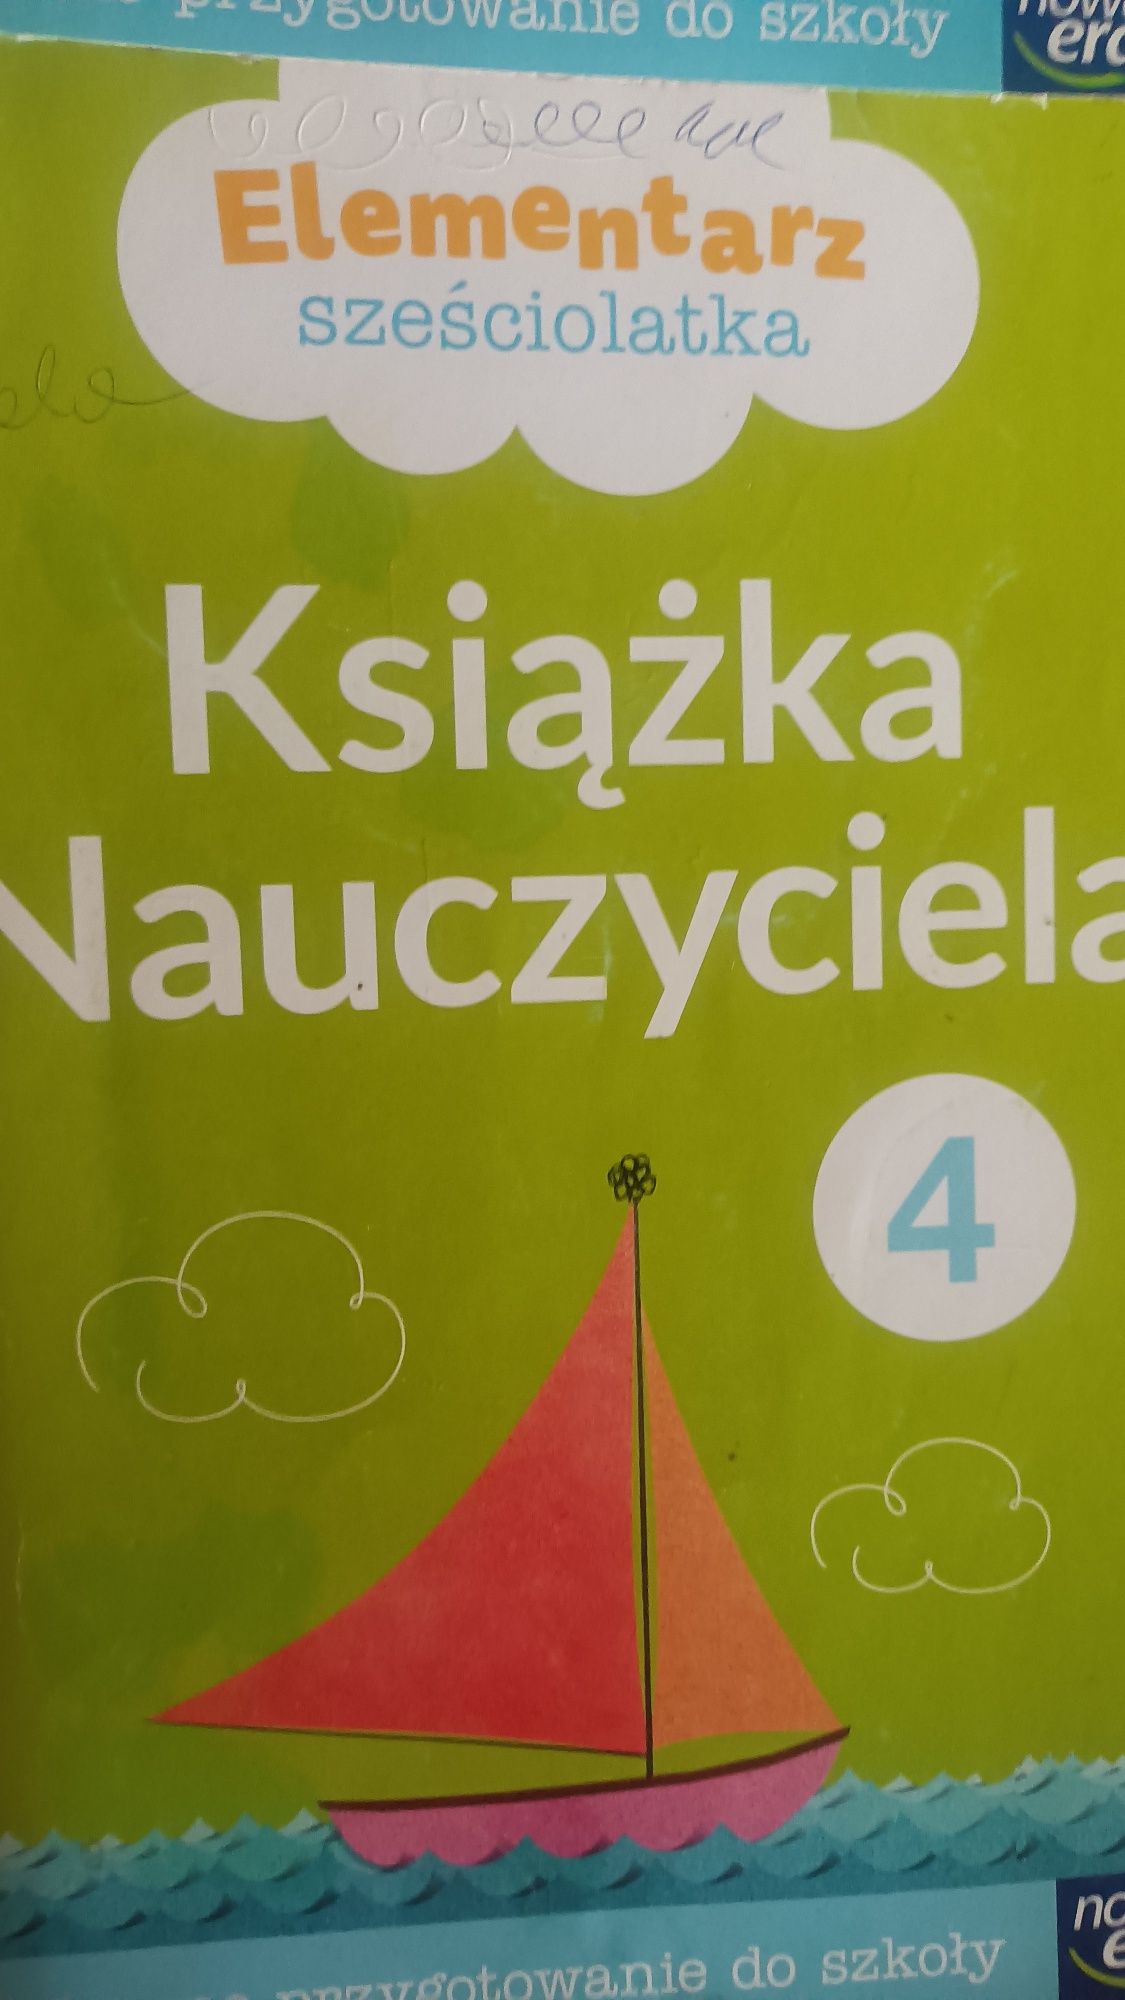 Elementarz szesciolatka - książka nauczyciela cz 1 -4